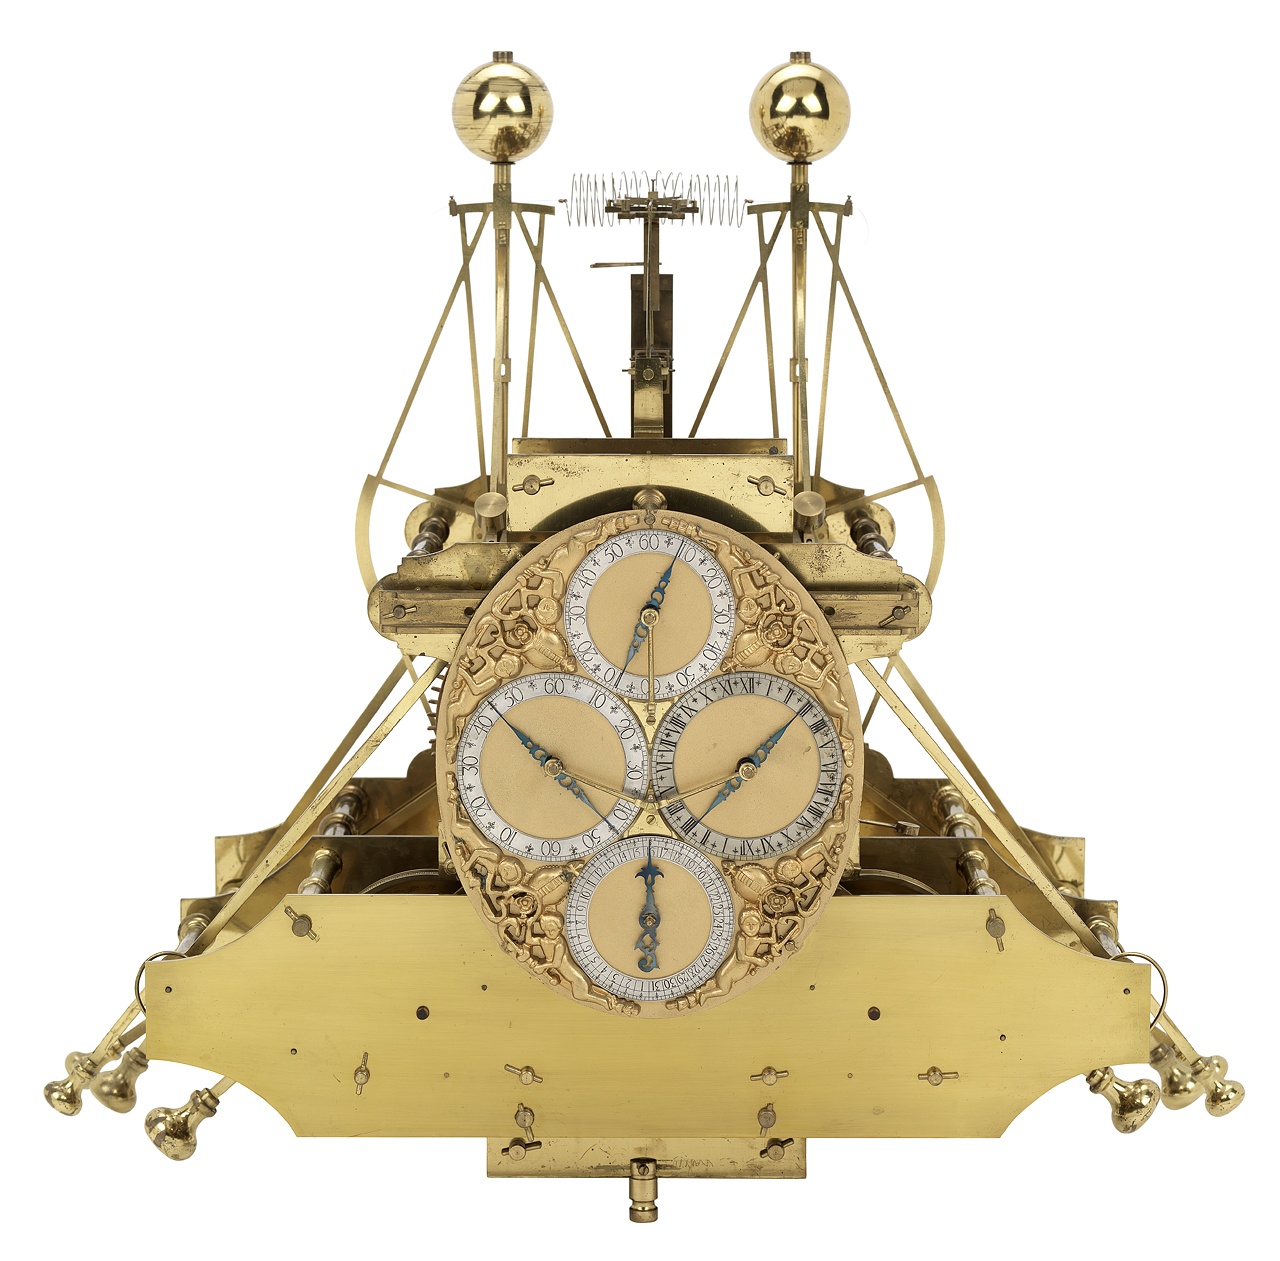 Вот так выглядели первые хронометры Харрисона. Пружинный маятник и масса противовесов. И эта штука занимает целую каюту, подобно первым компьютерам. 